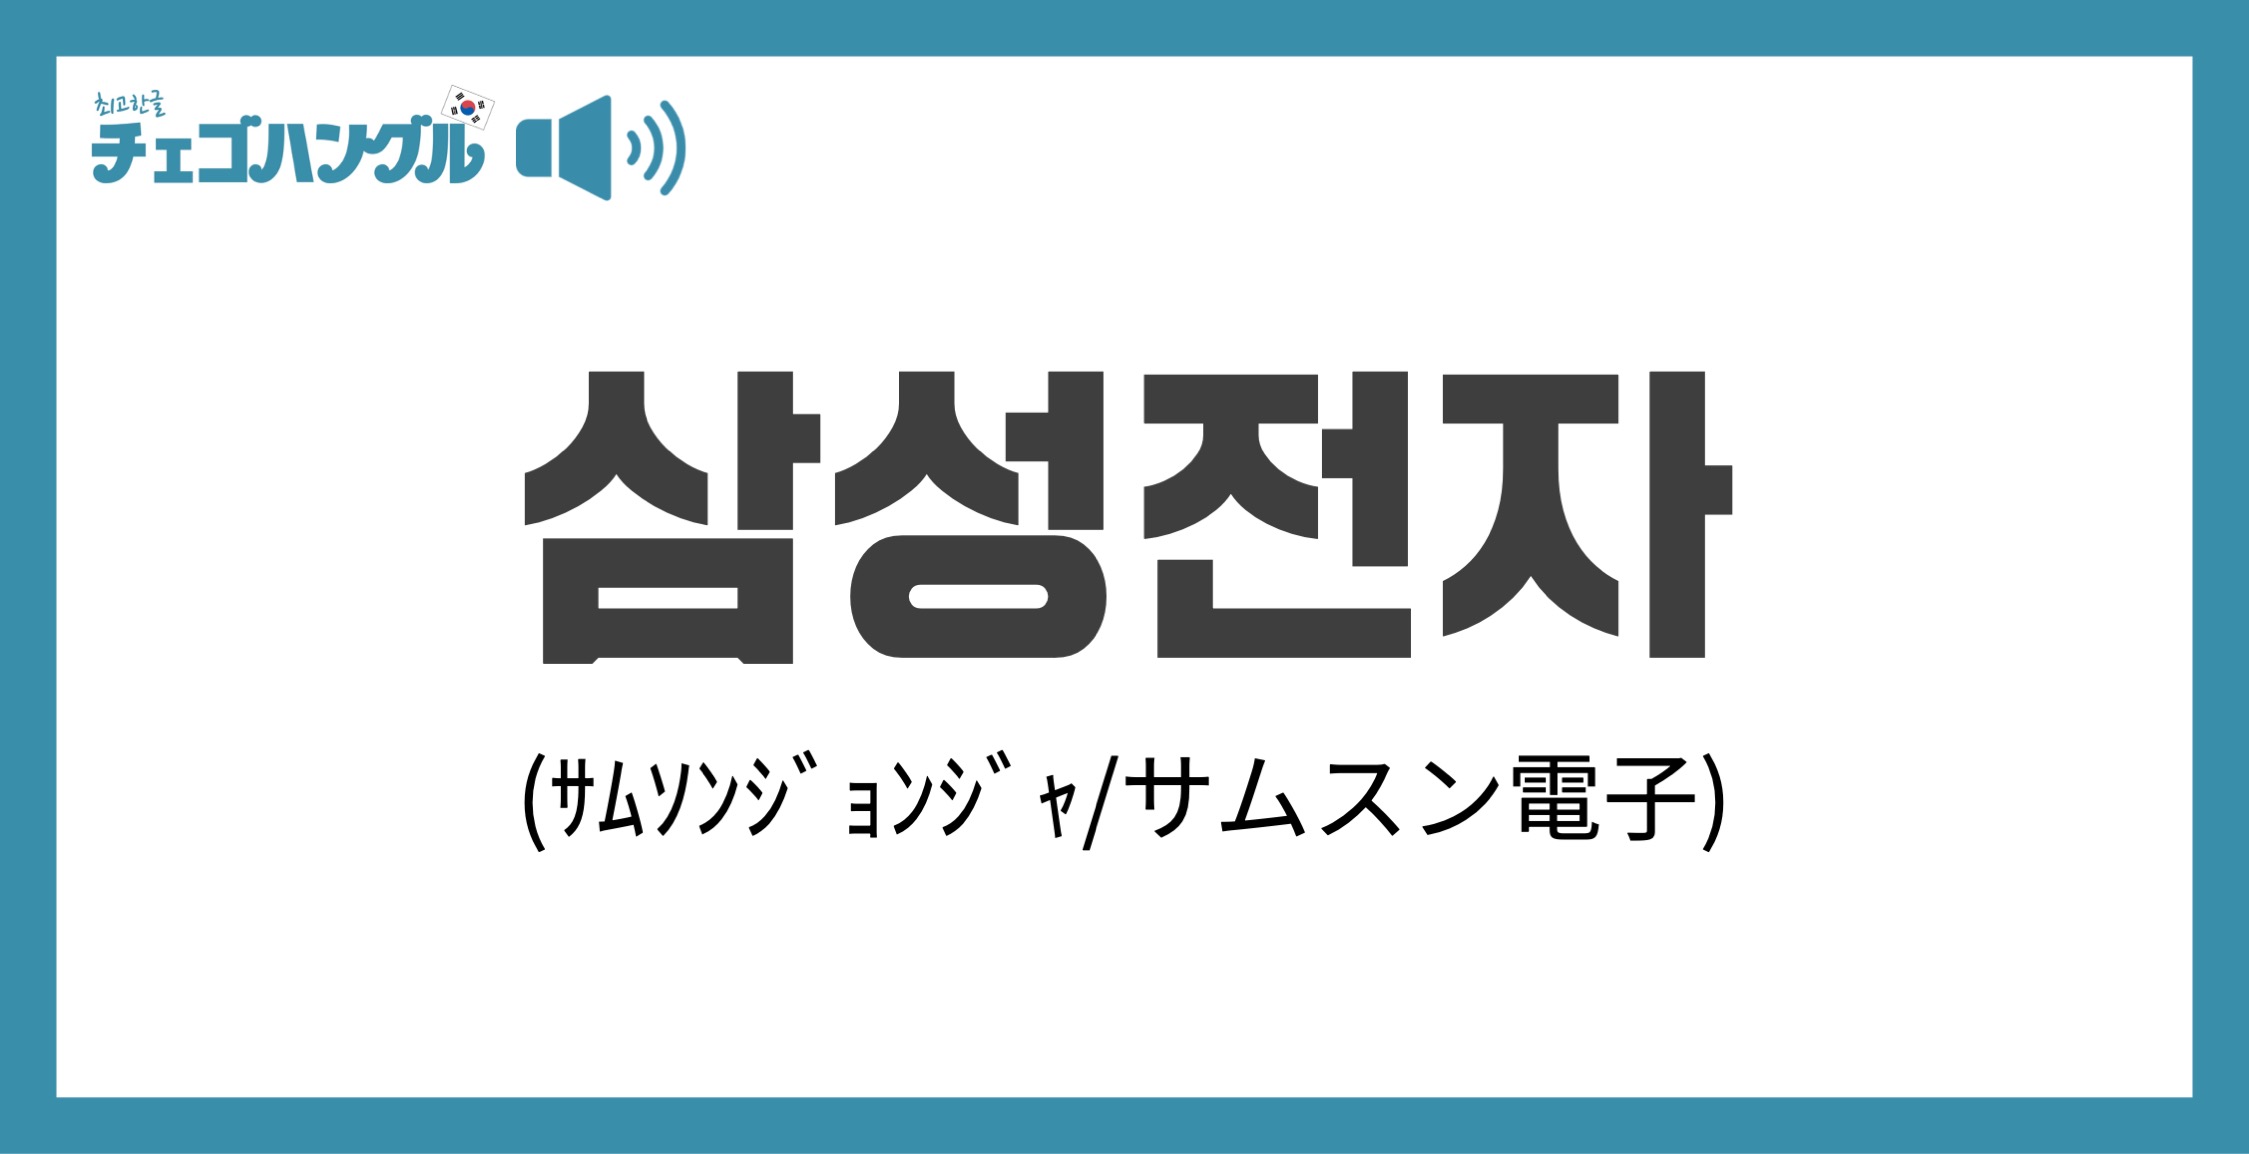 SAMSUNG GALAXY player70 韓国語サムスン